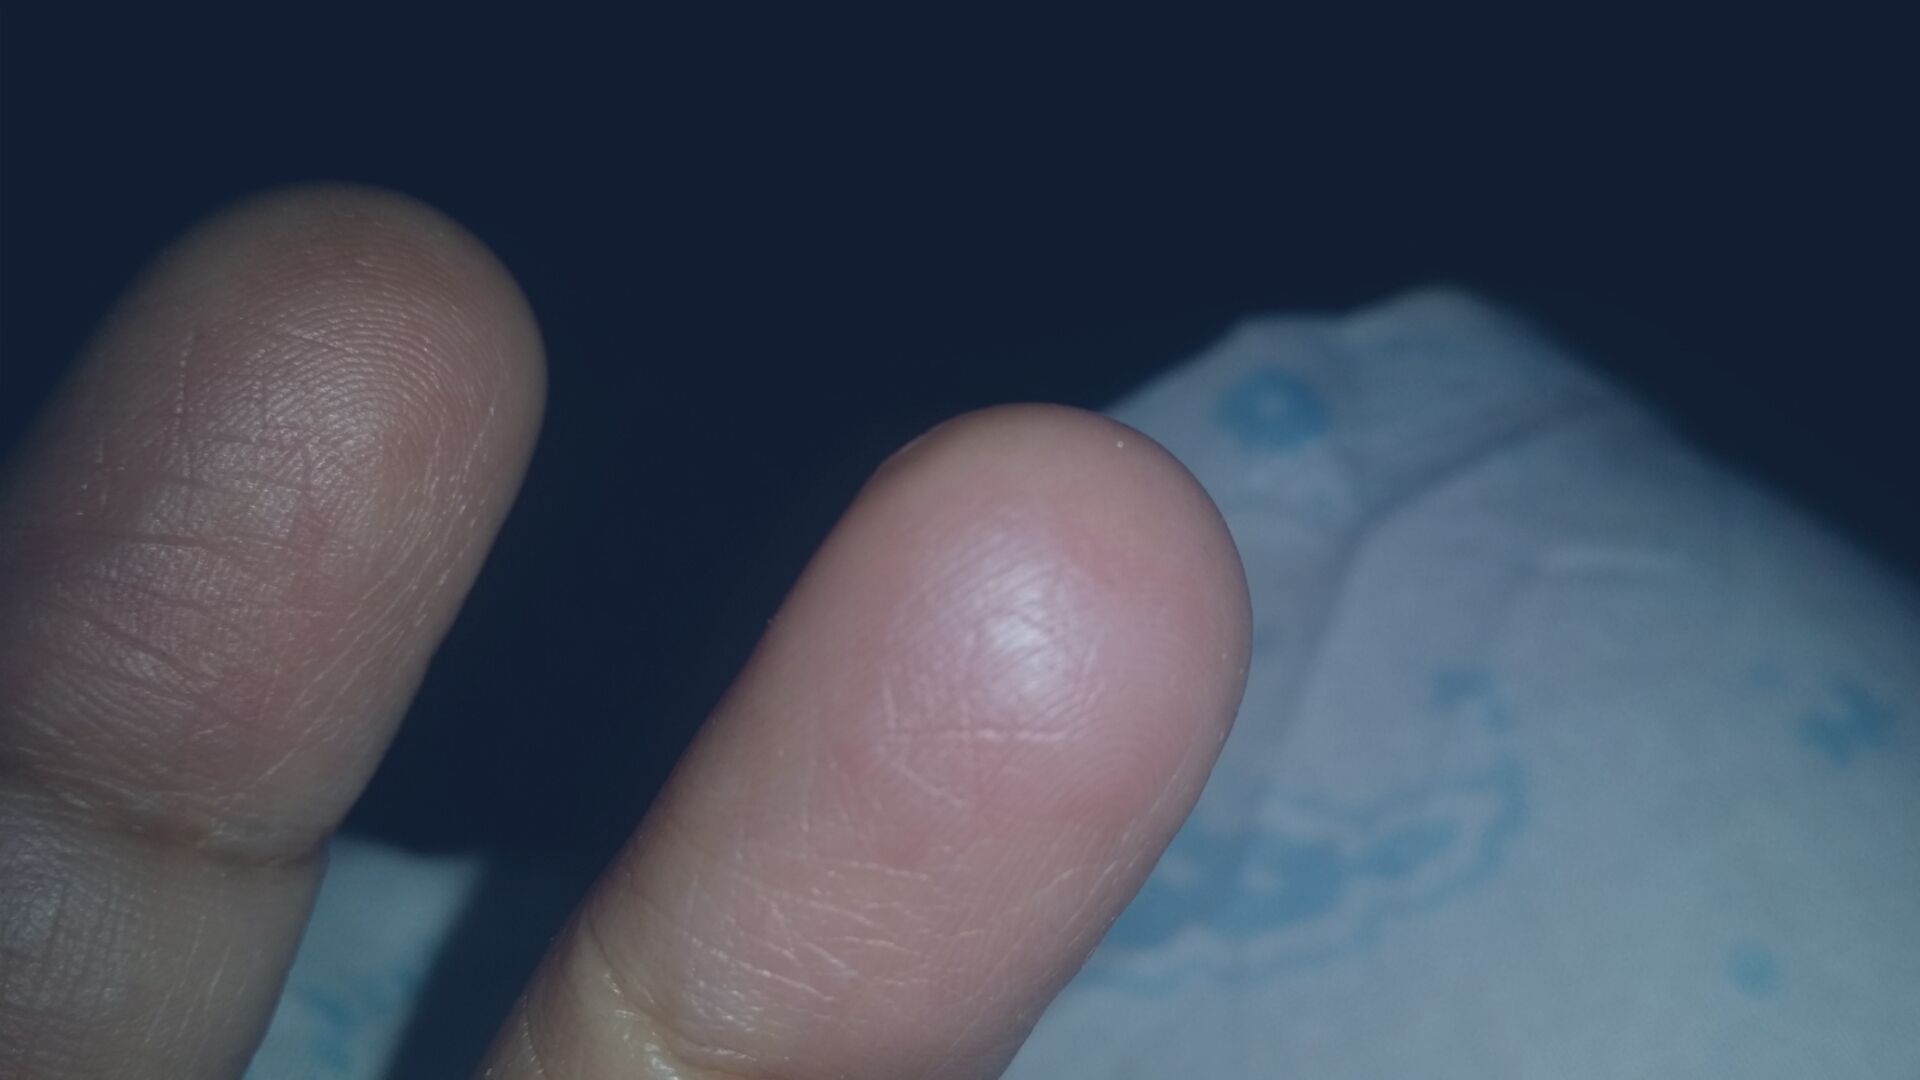 my finger